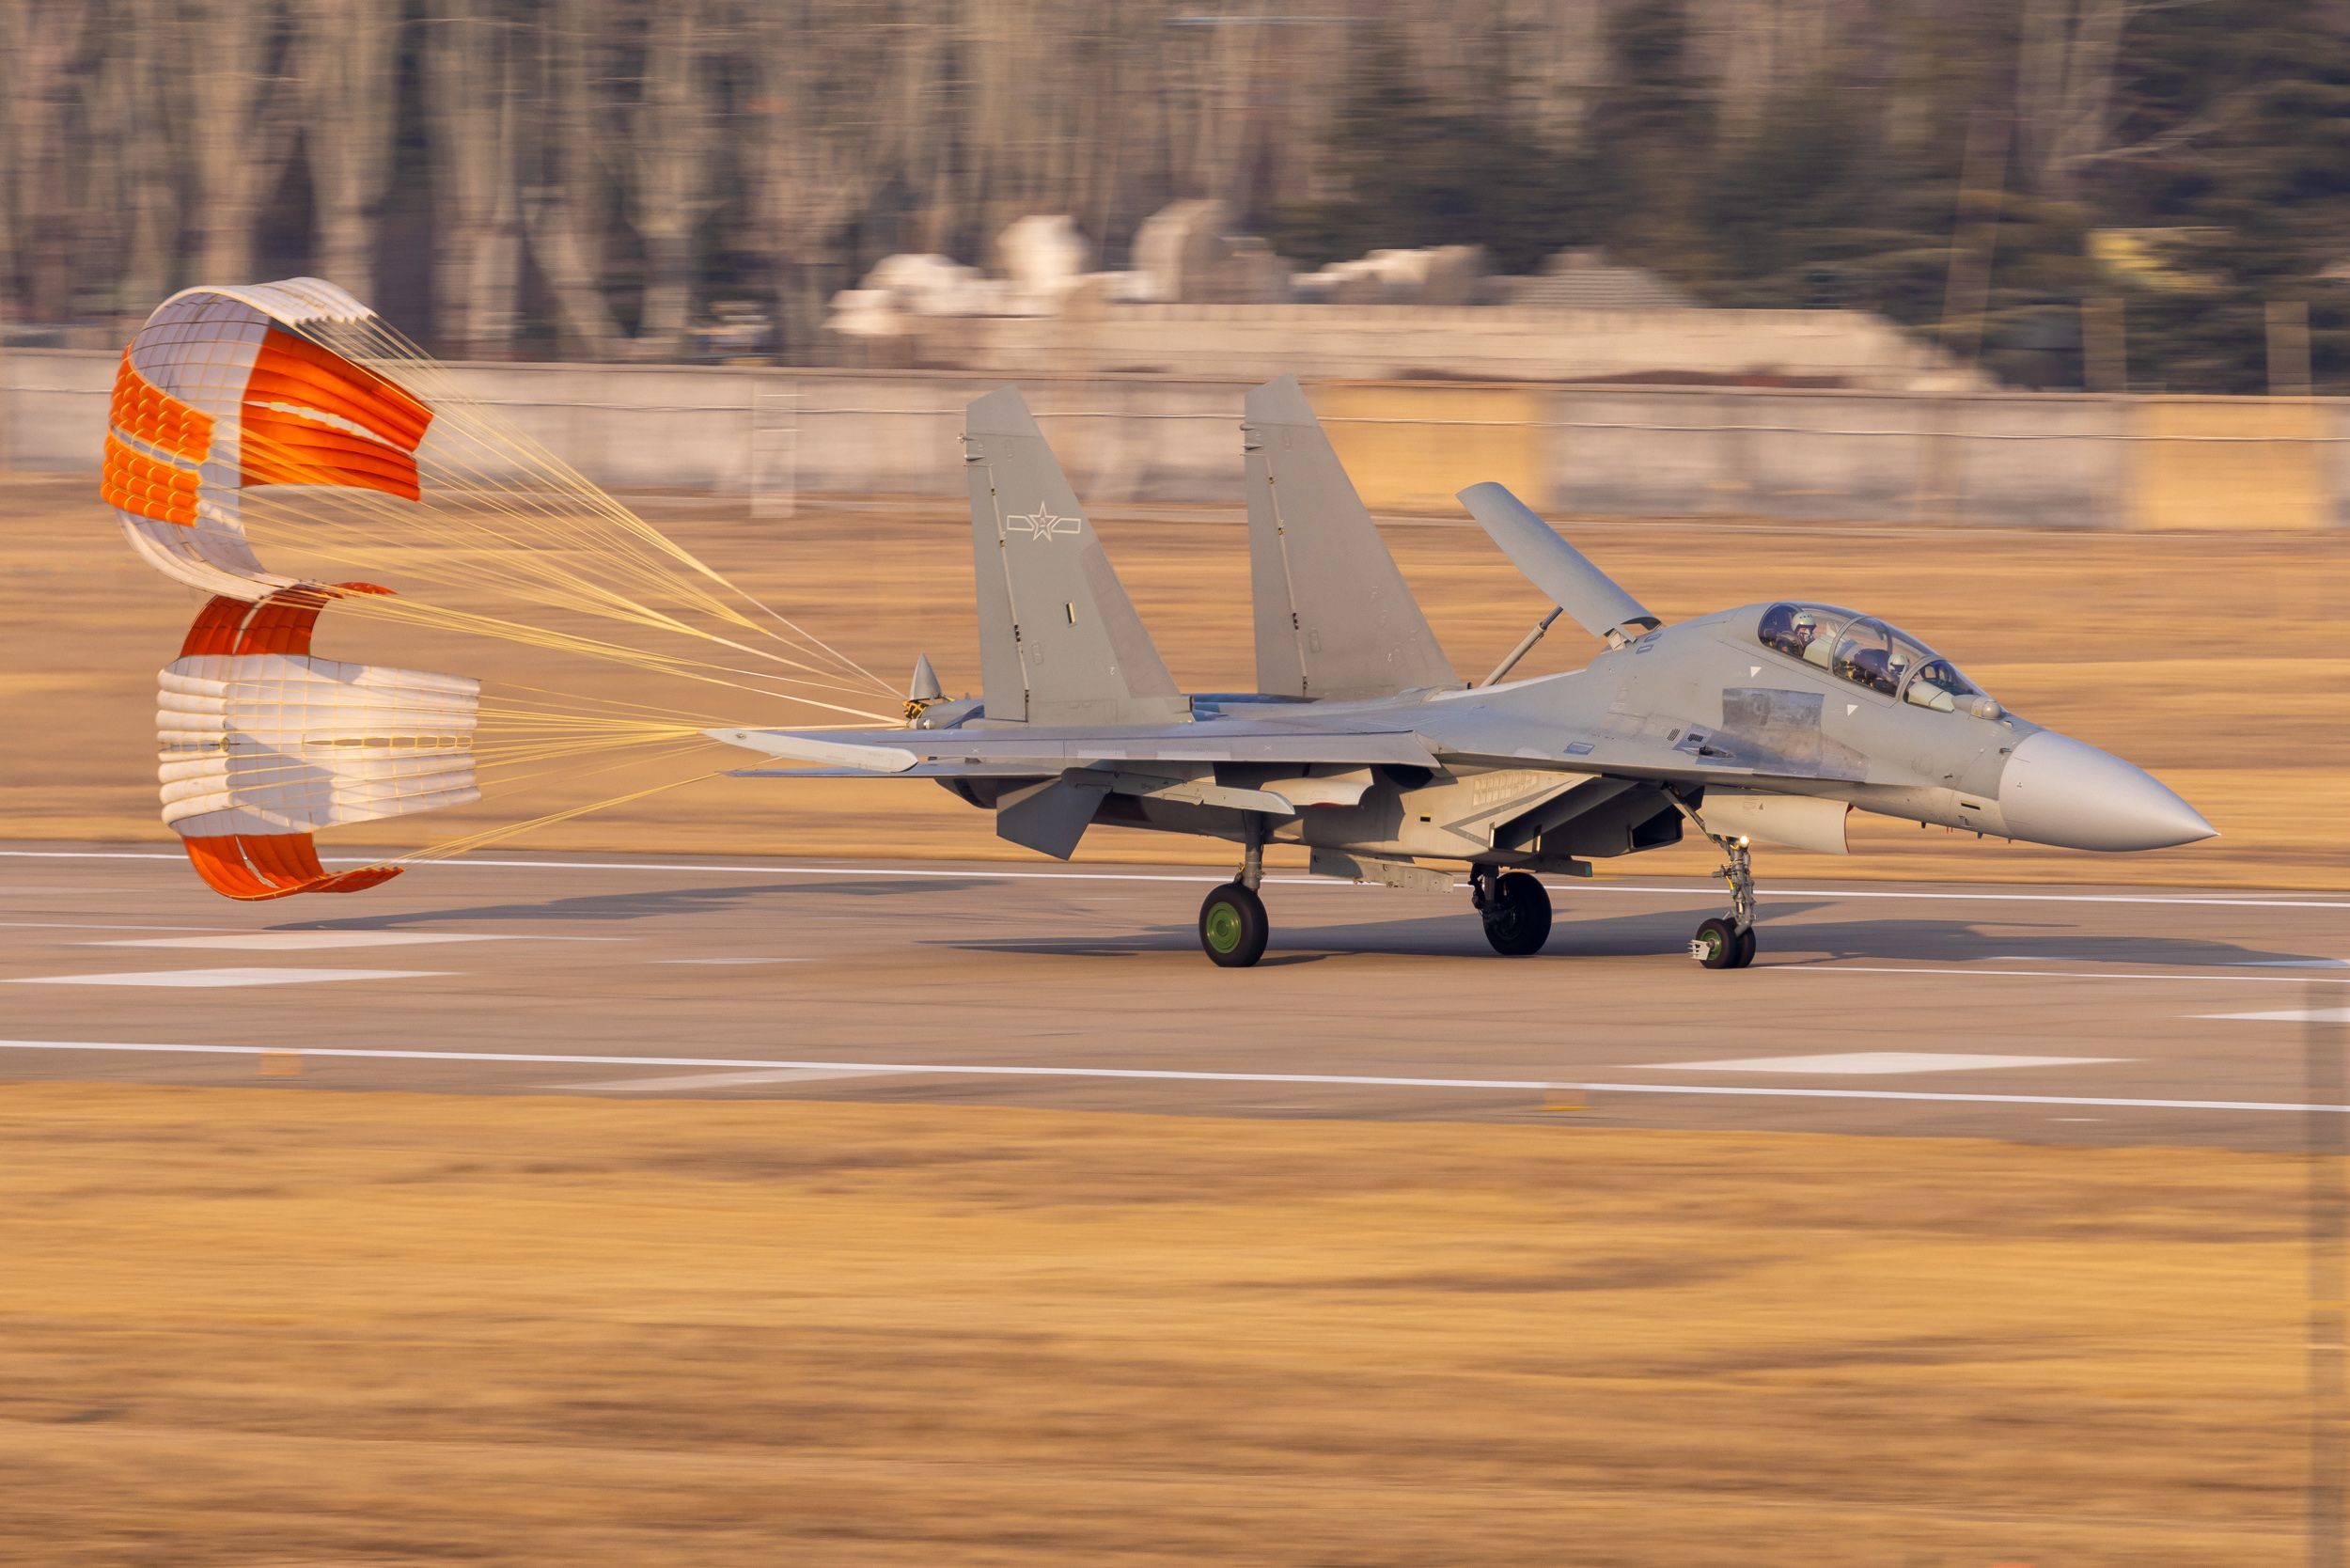 实弹突击,自由空战:北部战区空军航空兵新年实战训练